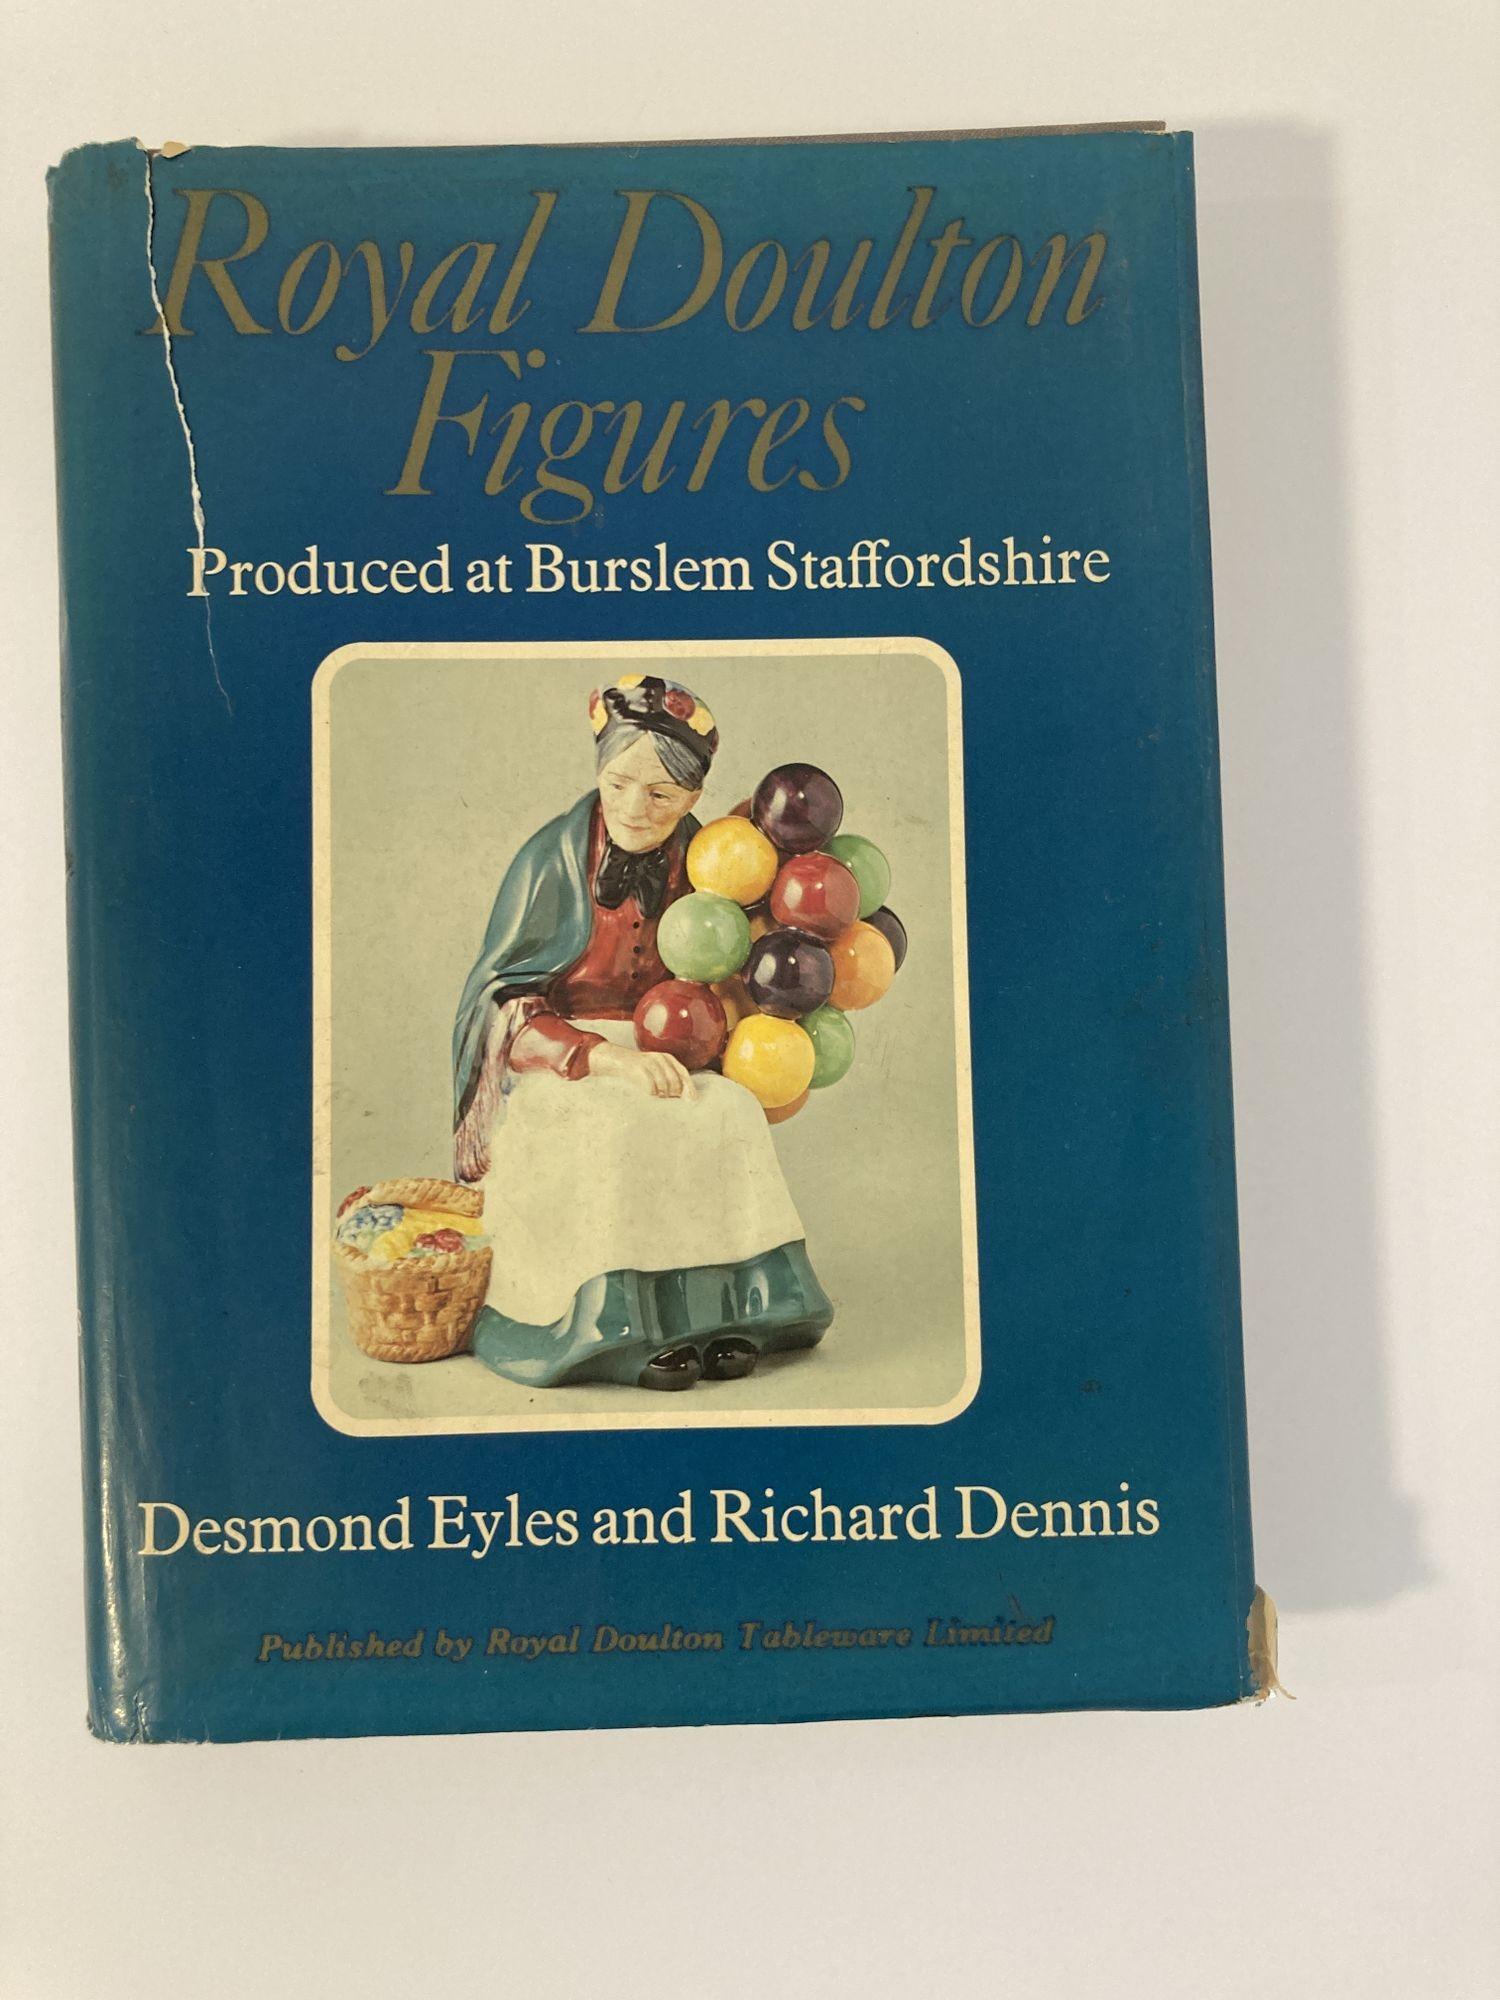 Royal Doulton Figures 1ère Ed. 1ère impression, livre relié 1978.
Figurines Royal Doulton produites à Berslem c1890 - 1978 Desmond Eyles & Richard Dennis.
Publié par Royal Doulton Tableware Ltd, Stoke - on - Trent, 1978.
L'ouvrage compte 432